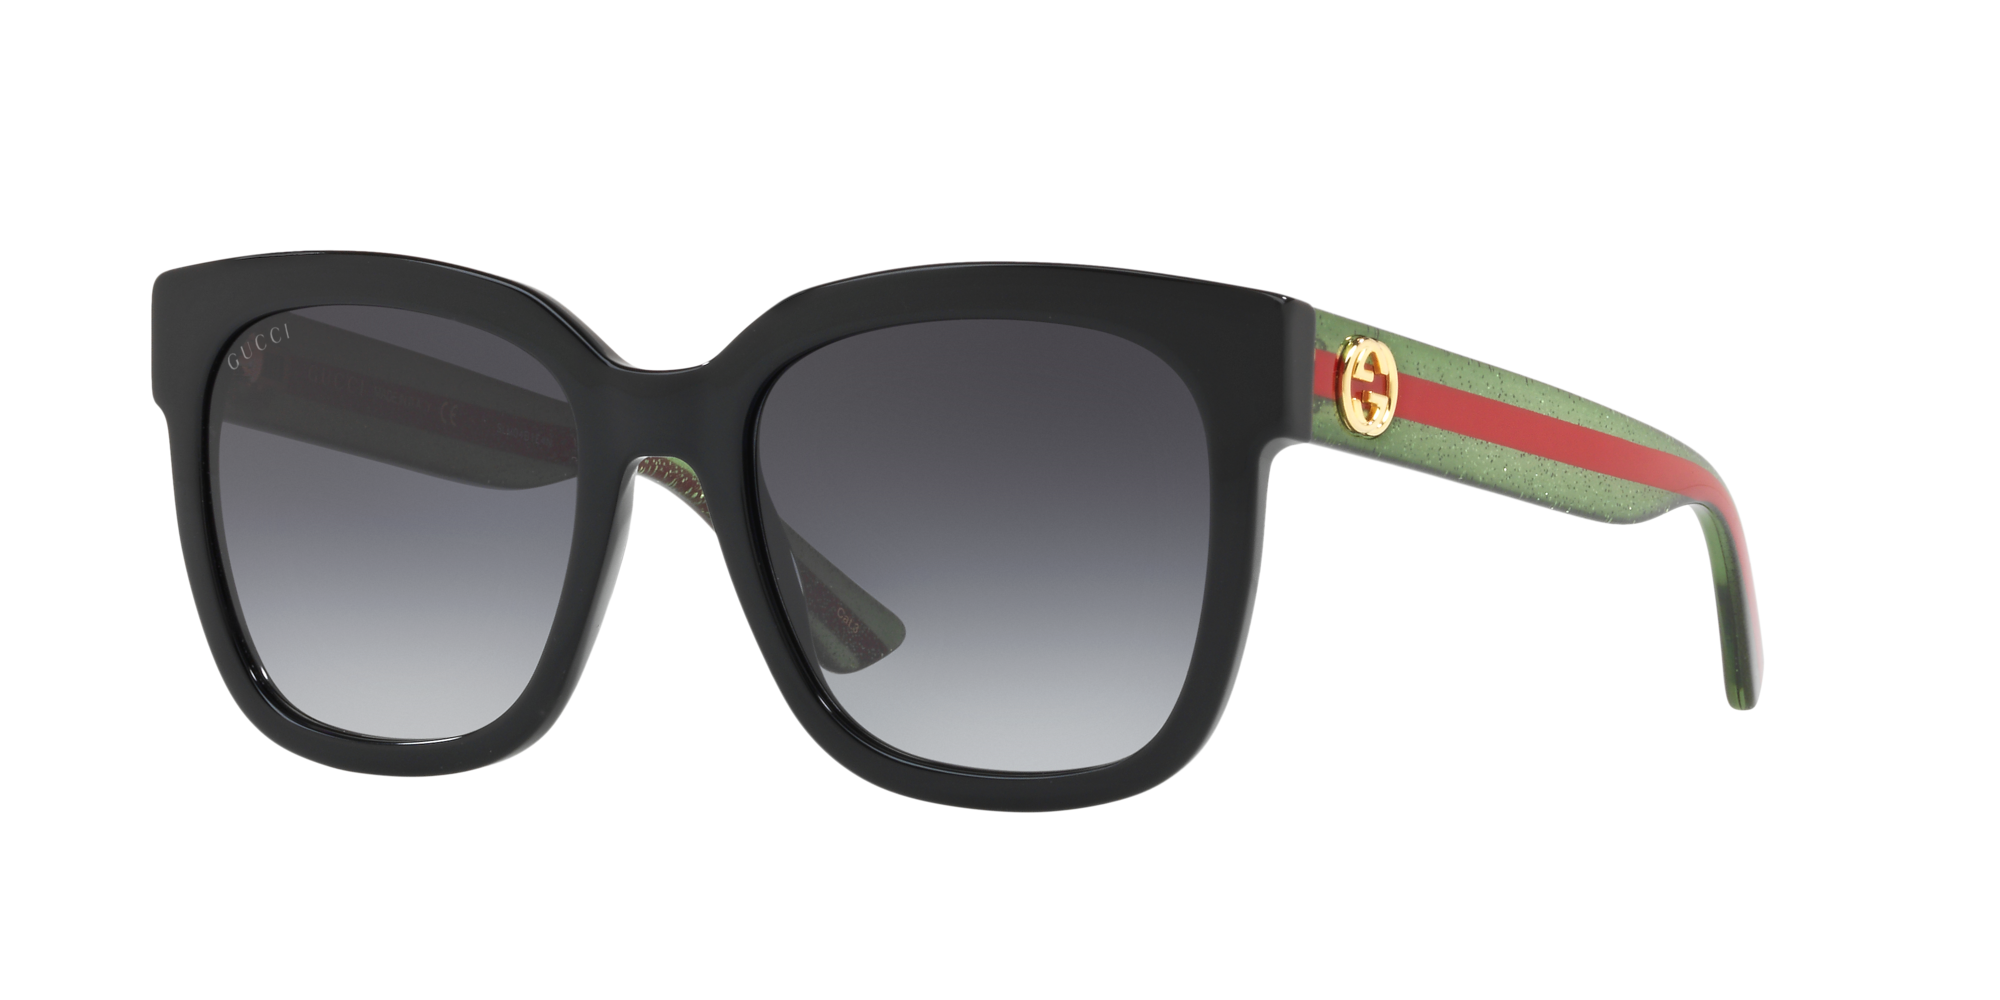 gucci grey sunglasses